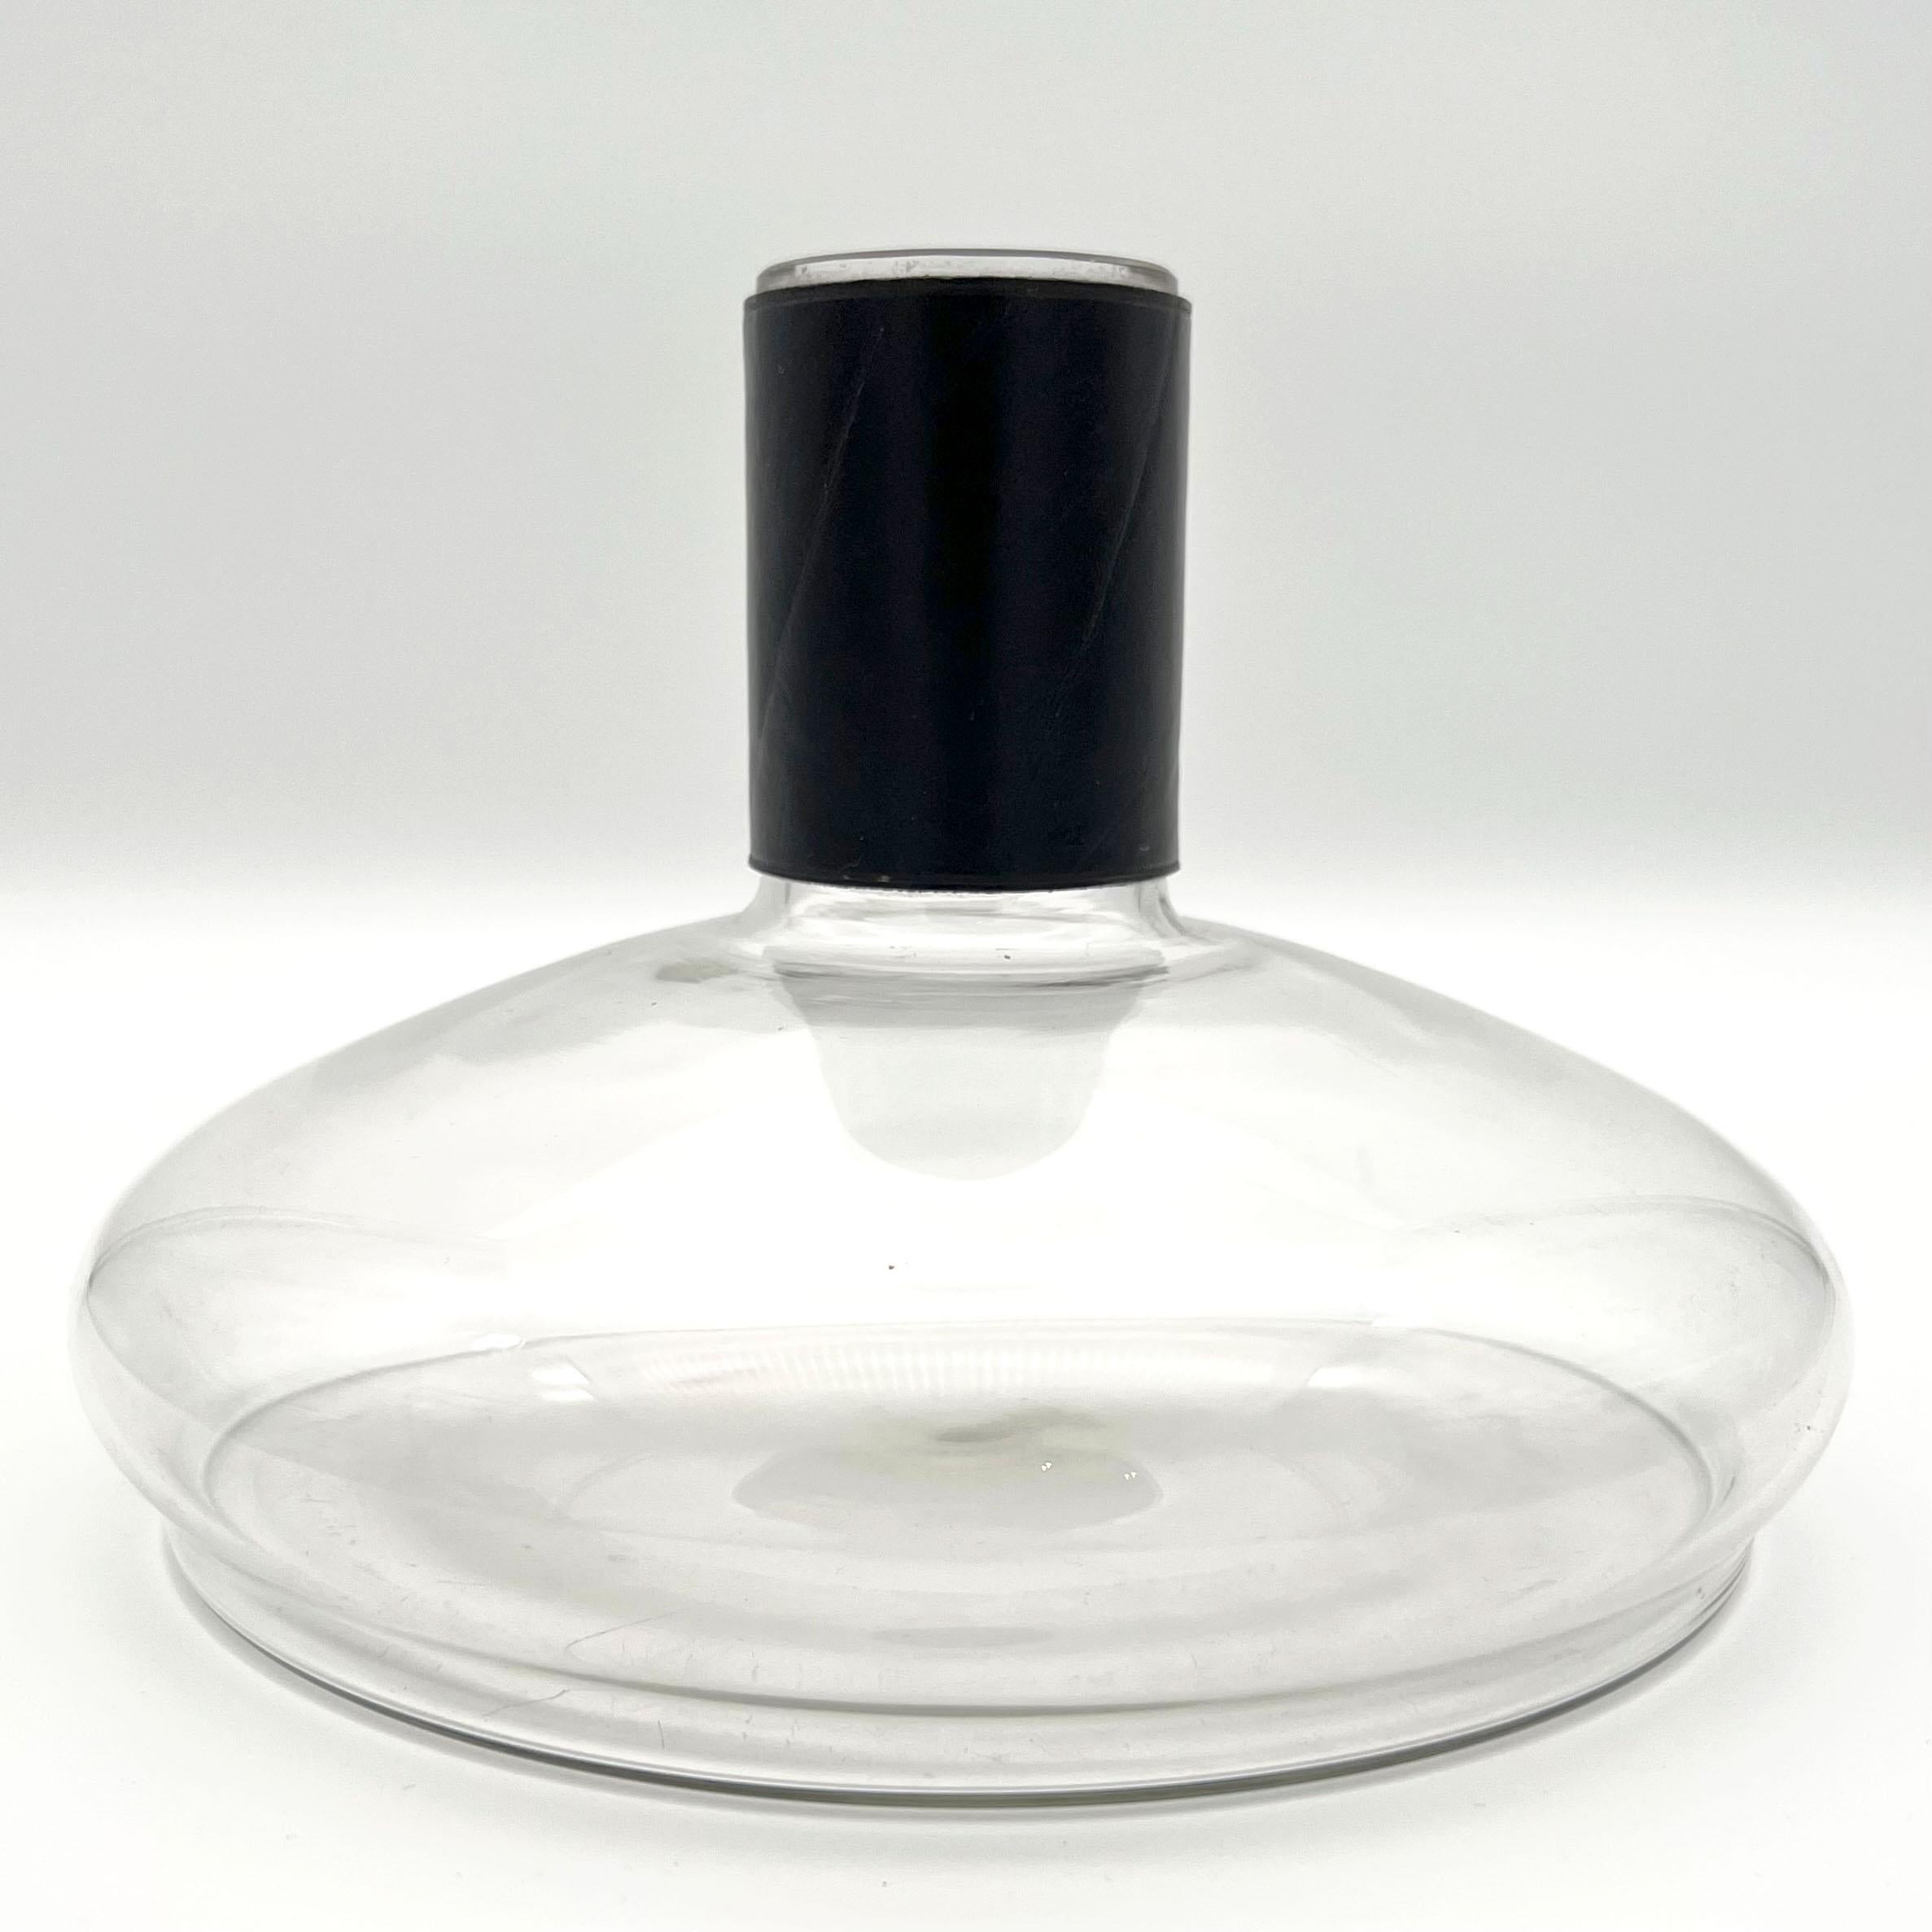 Carl Auböck II Vase oder Karaffe, 1950er Jahre, Made in Austria.
Eine Glaskaraffe/Vase mit einem handgenähten Leder-Tropfstopp/ledergebundener Hülle am Flaschenhals.
Abgebildet im Katalog 